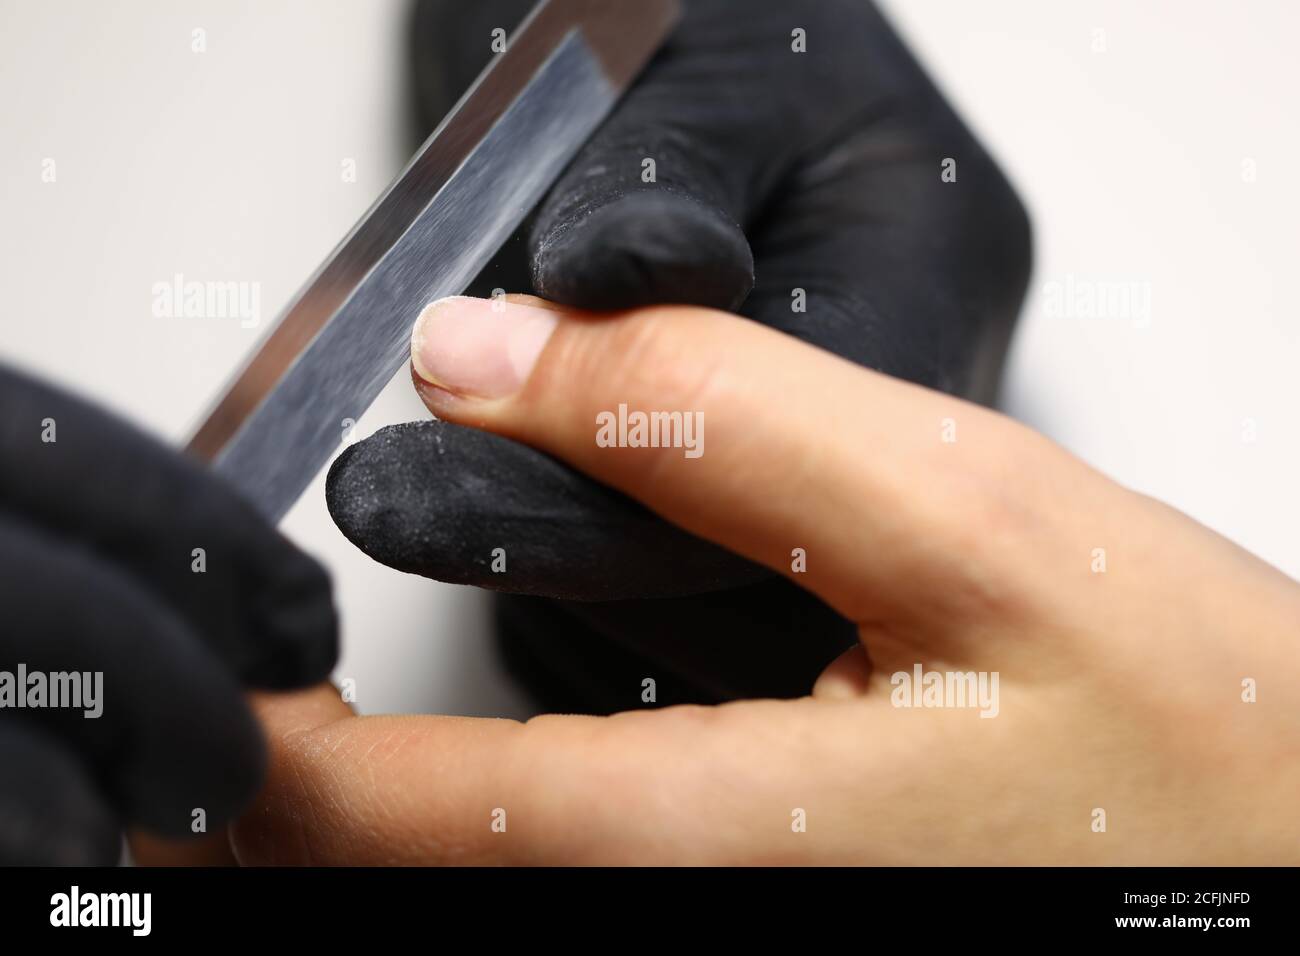 El manicurista sostiene el dedo del cliente y forma la longitud de la uña con la lima de uñas. Foto de stock